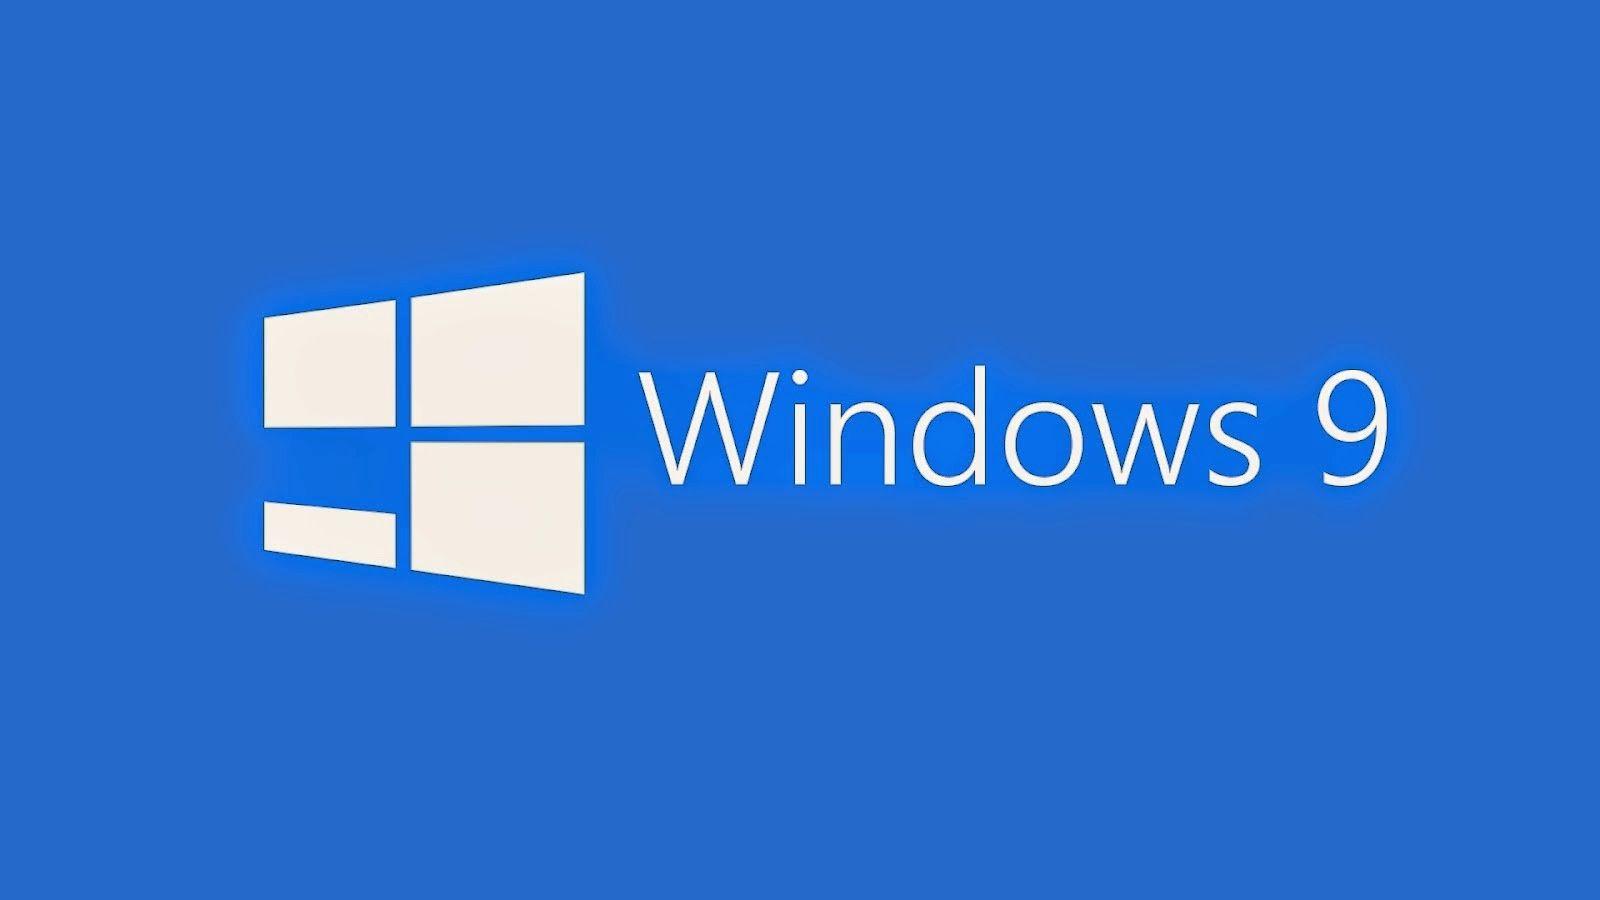 Windows 9 Logo - Windows 9 technical preview